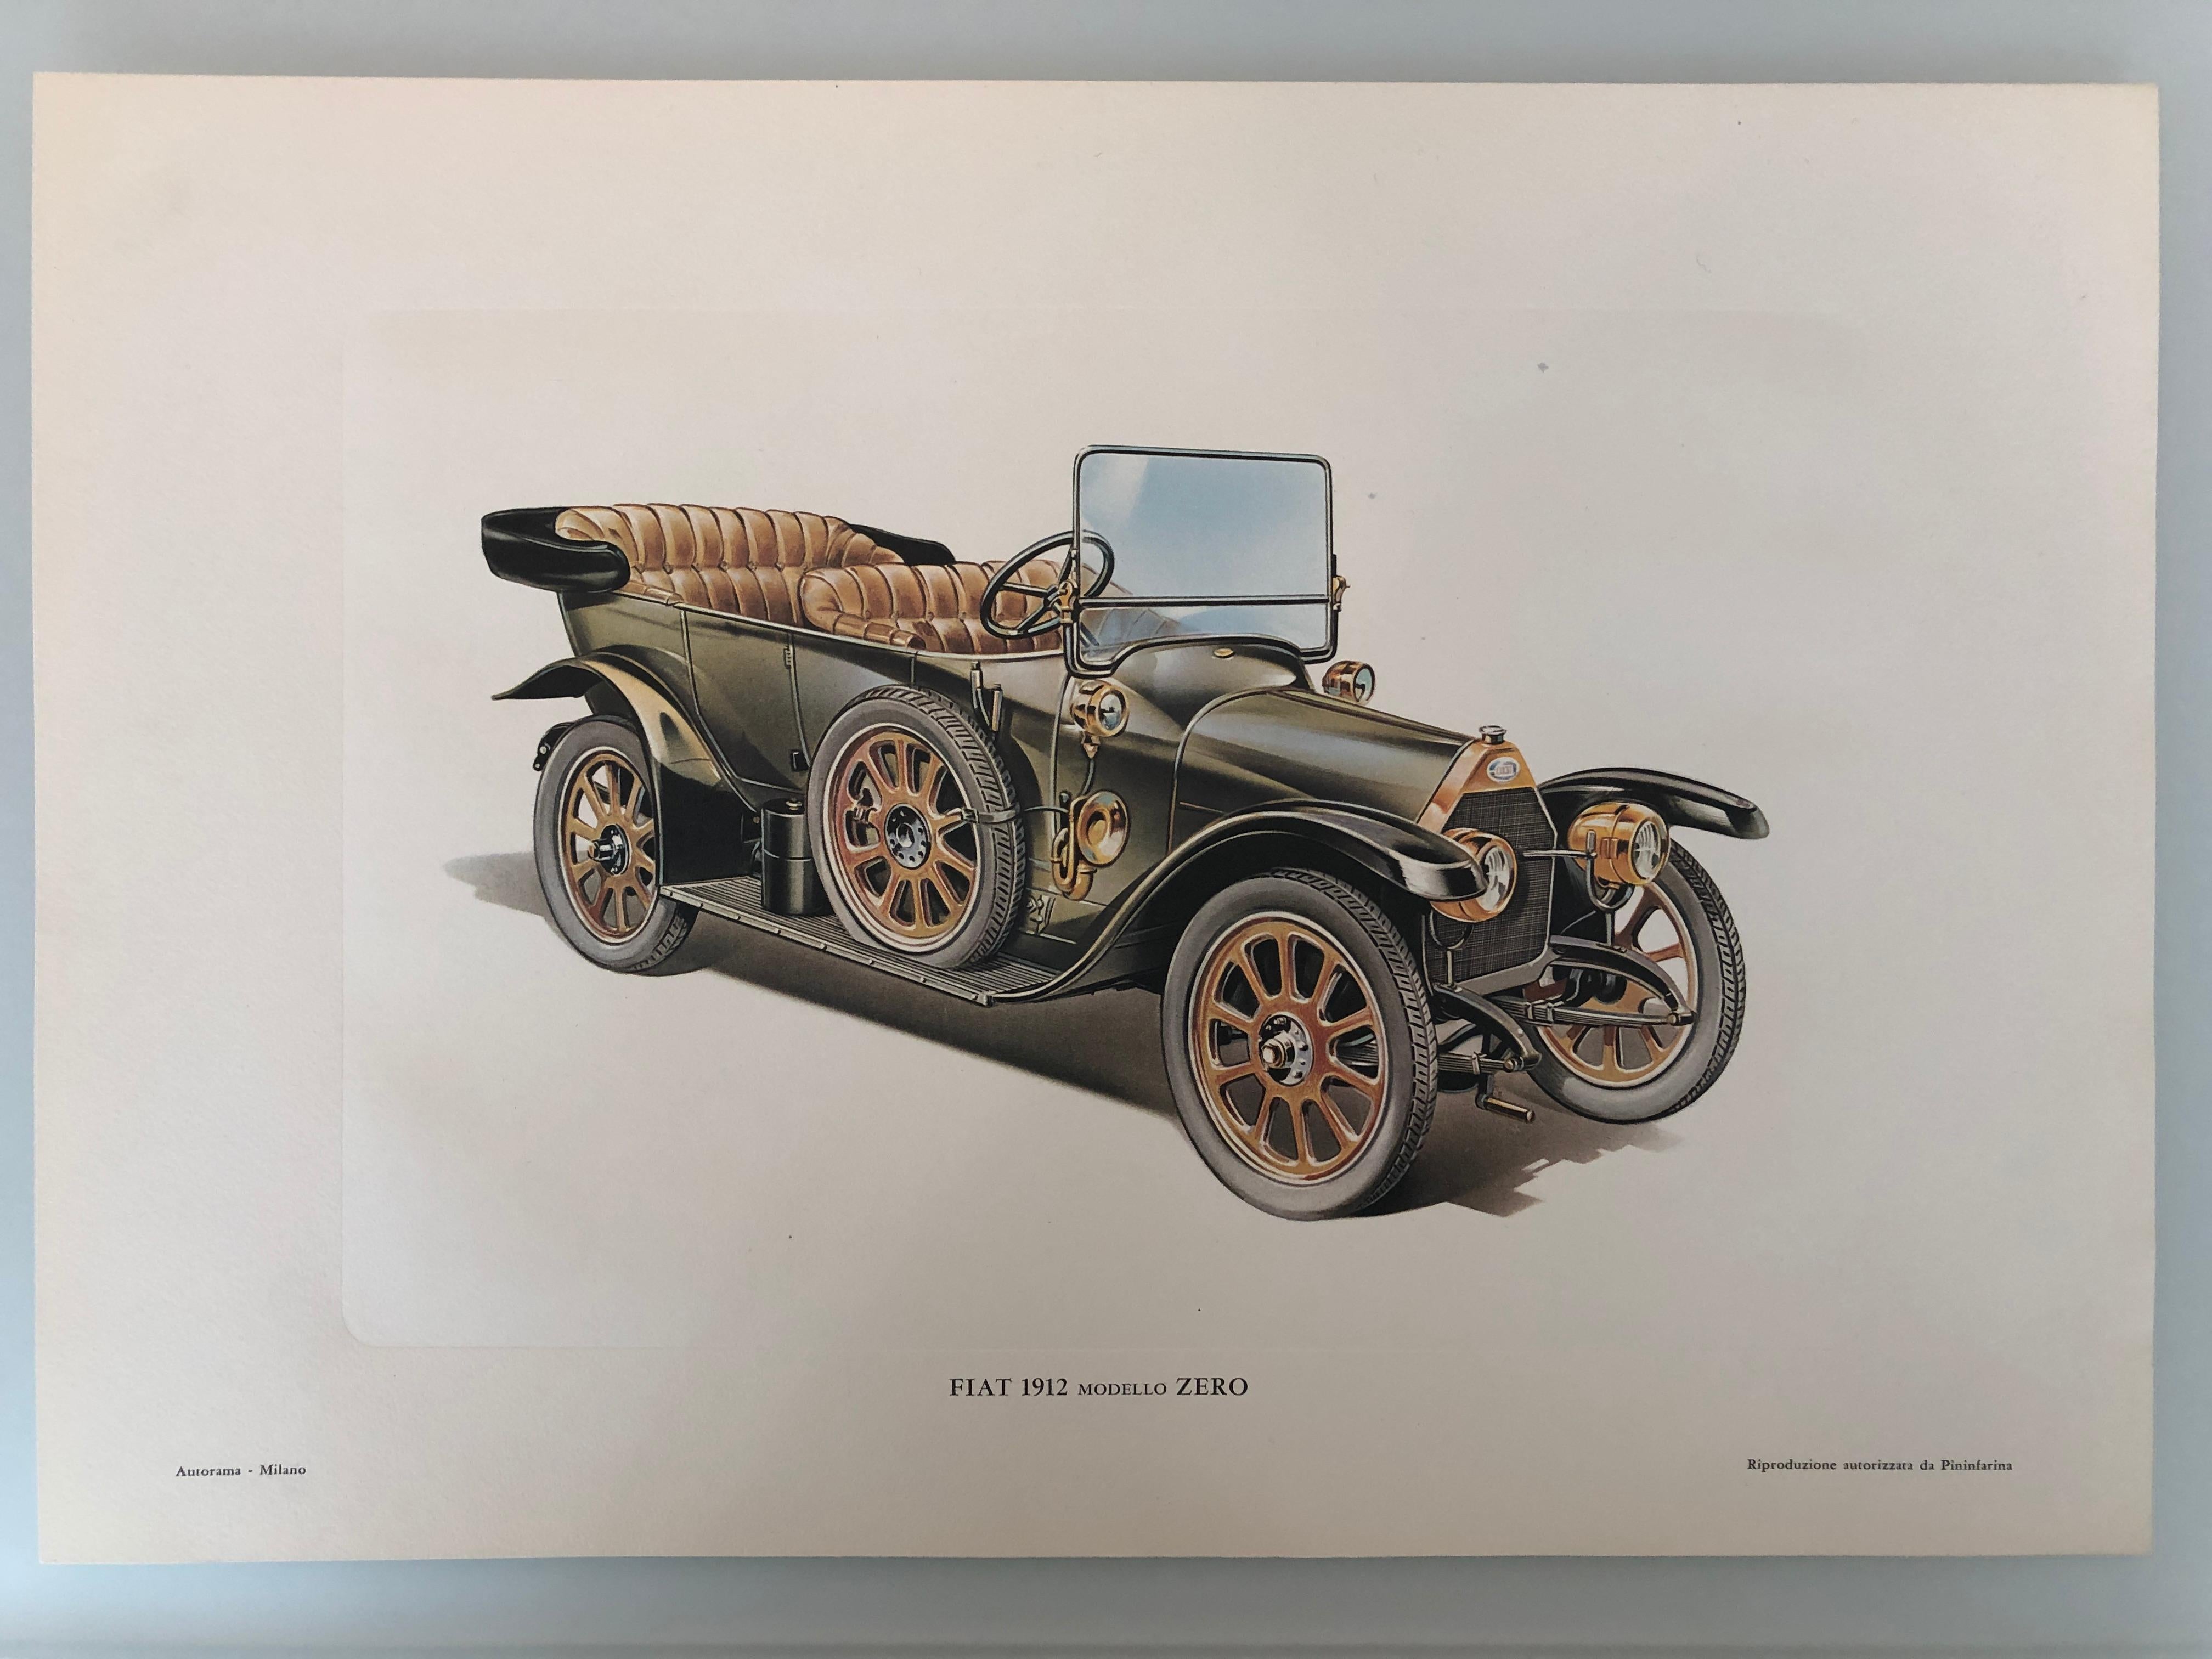 Mitte des XX. Jahrhunderts Pininfarina Mehrserienlithographie

Wir haben viele Stücke mit zwei Themen 
Hier stellt die Lithographie ein Alfa Romeo 33 Modell dar, das von Autorama veröffentlicht wurde. 

Wir haben auch Lithographien, die FIAT 912